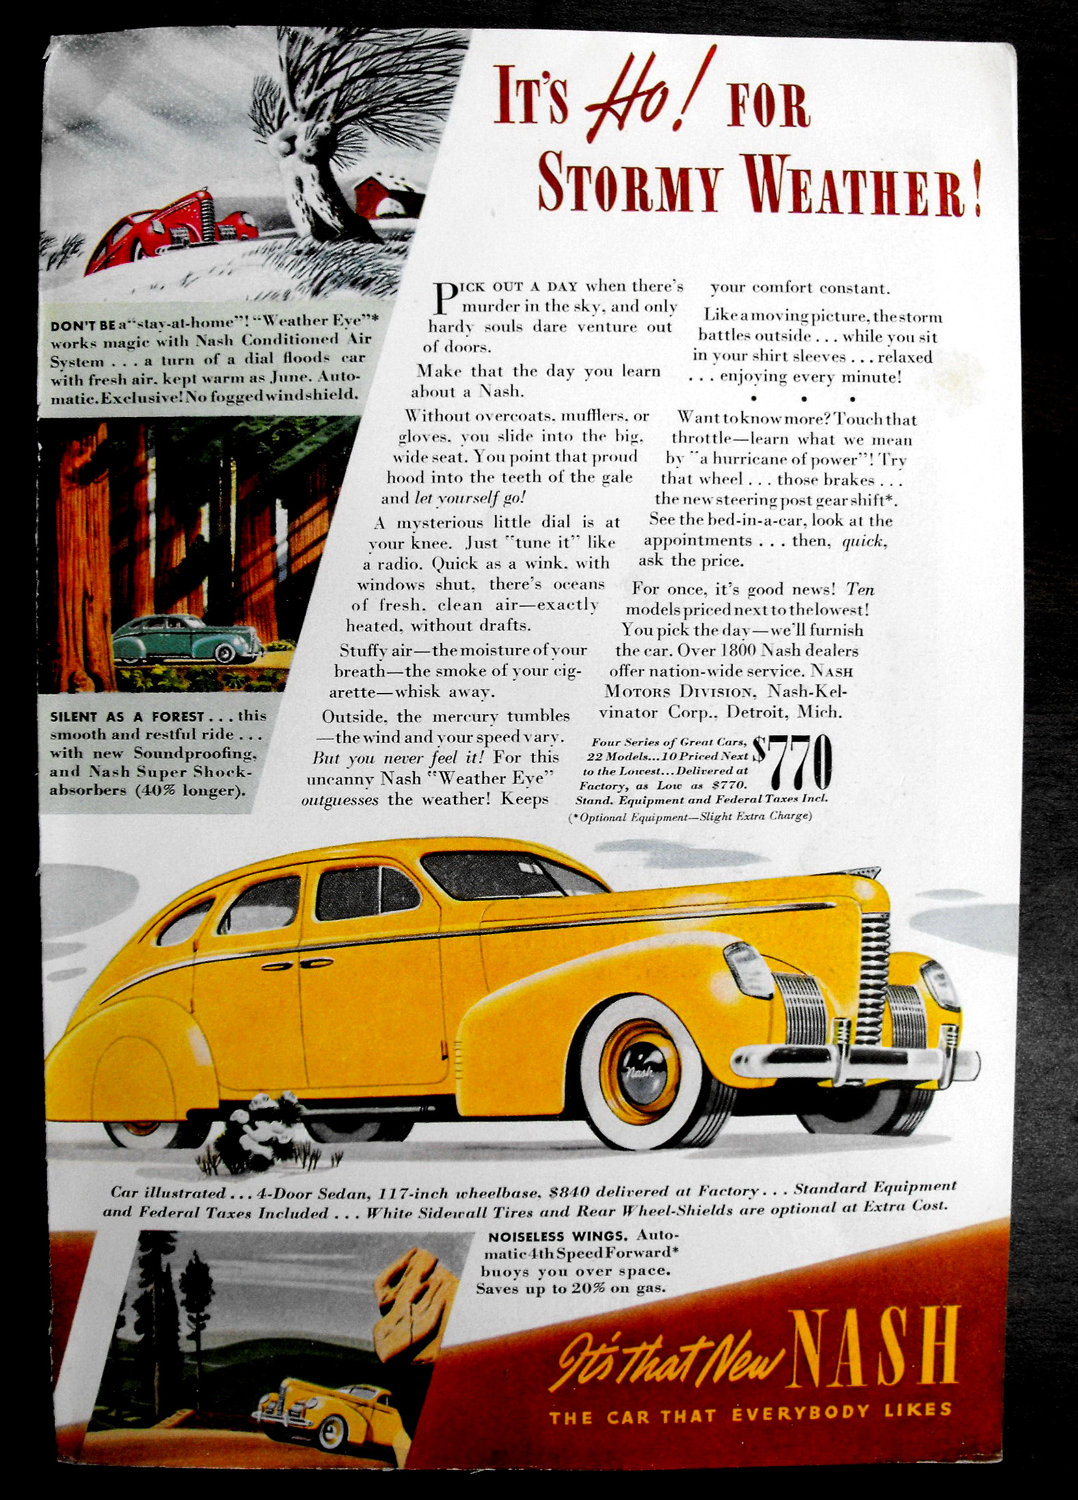 1939 Nash 4 Dr Sedan Car Auto Vintage Color Print by rgilbert155